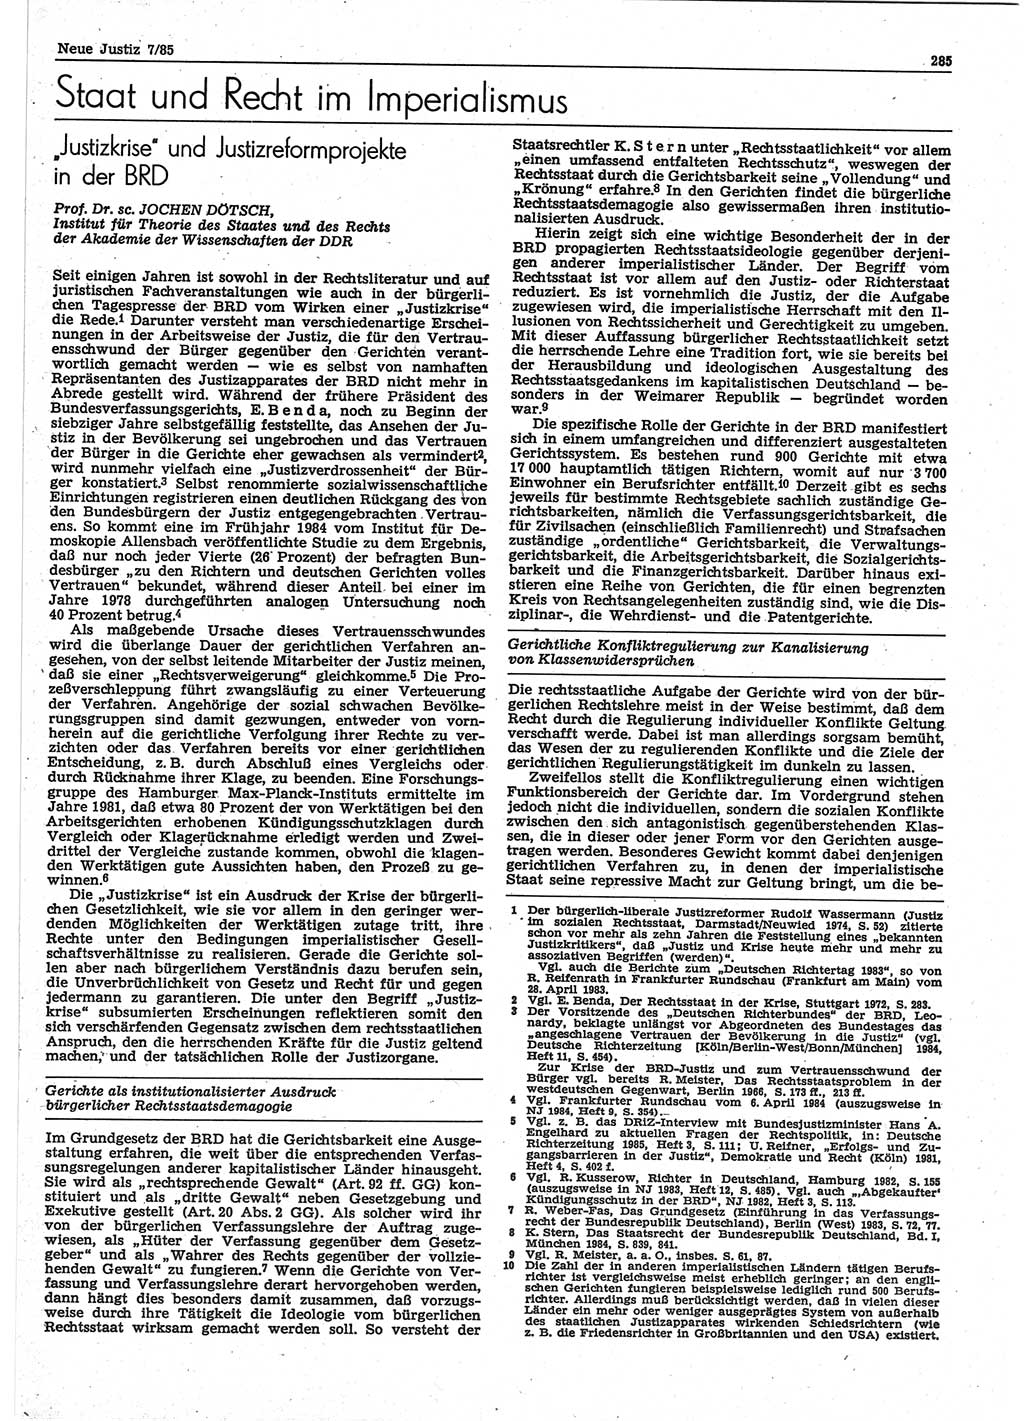 Neue Justiz (NJ), Zeitschrift für sozialistisches Recht und Gesetzlichkeit [Deutsche Demokratische Republik (DDR)], 39. Jahrgang 1985, Seite 285 (NJ DDR 1985, S. 285)